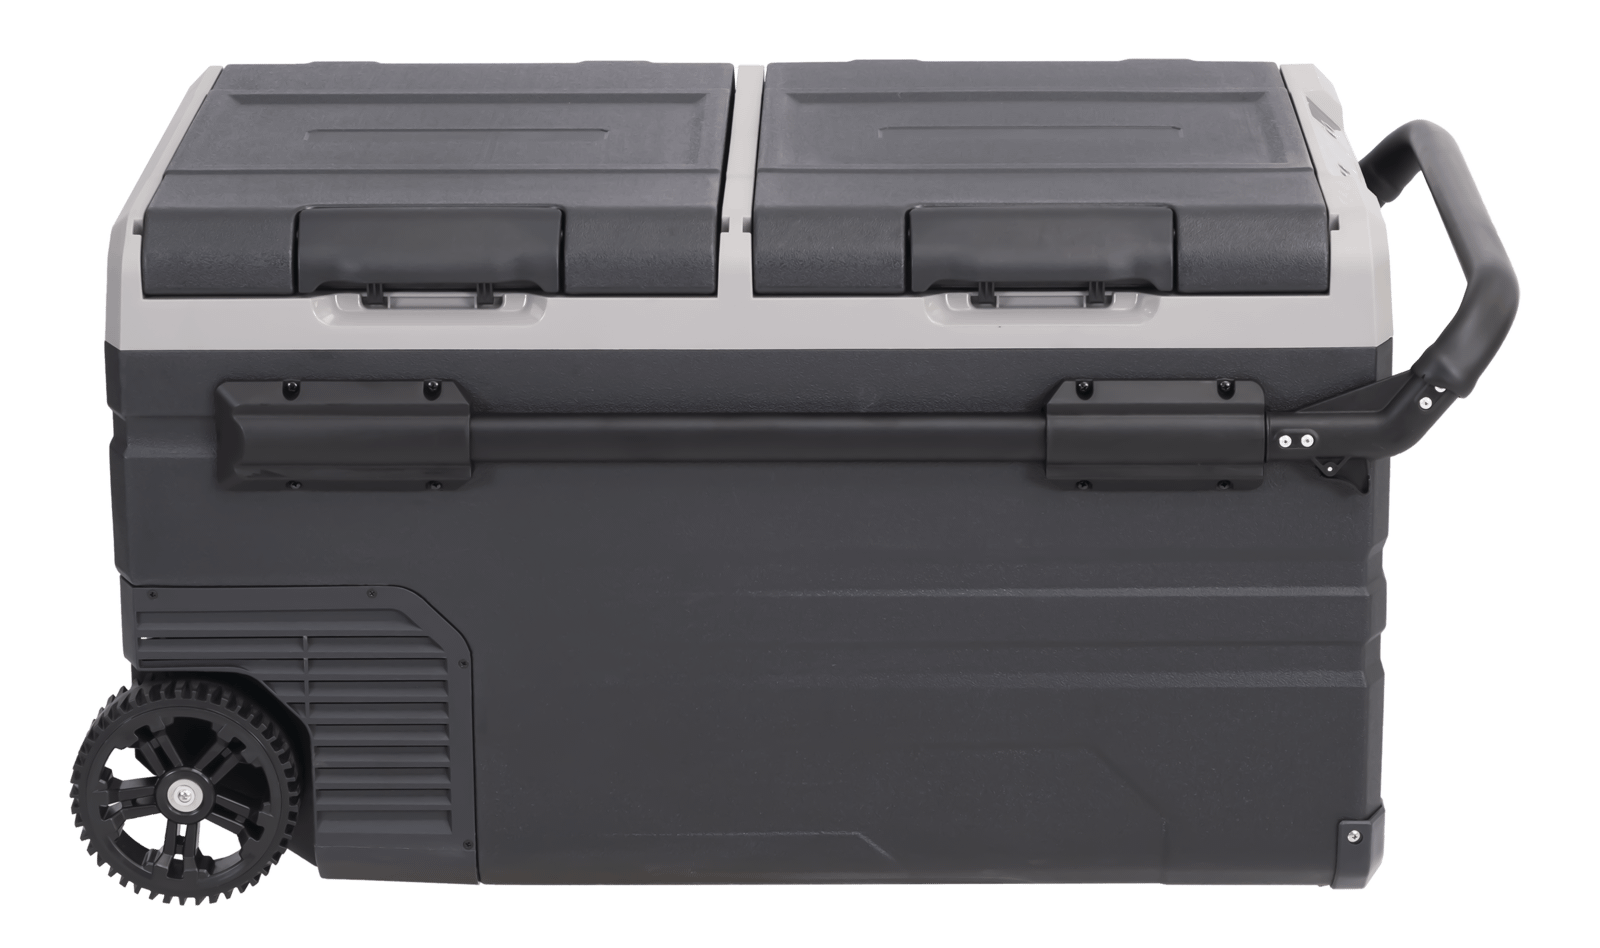 Avanti PDR75L34G 75L Portable Ac/Dc Cooler